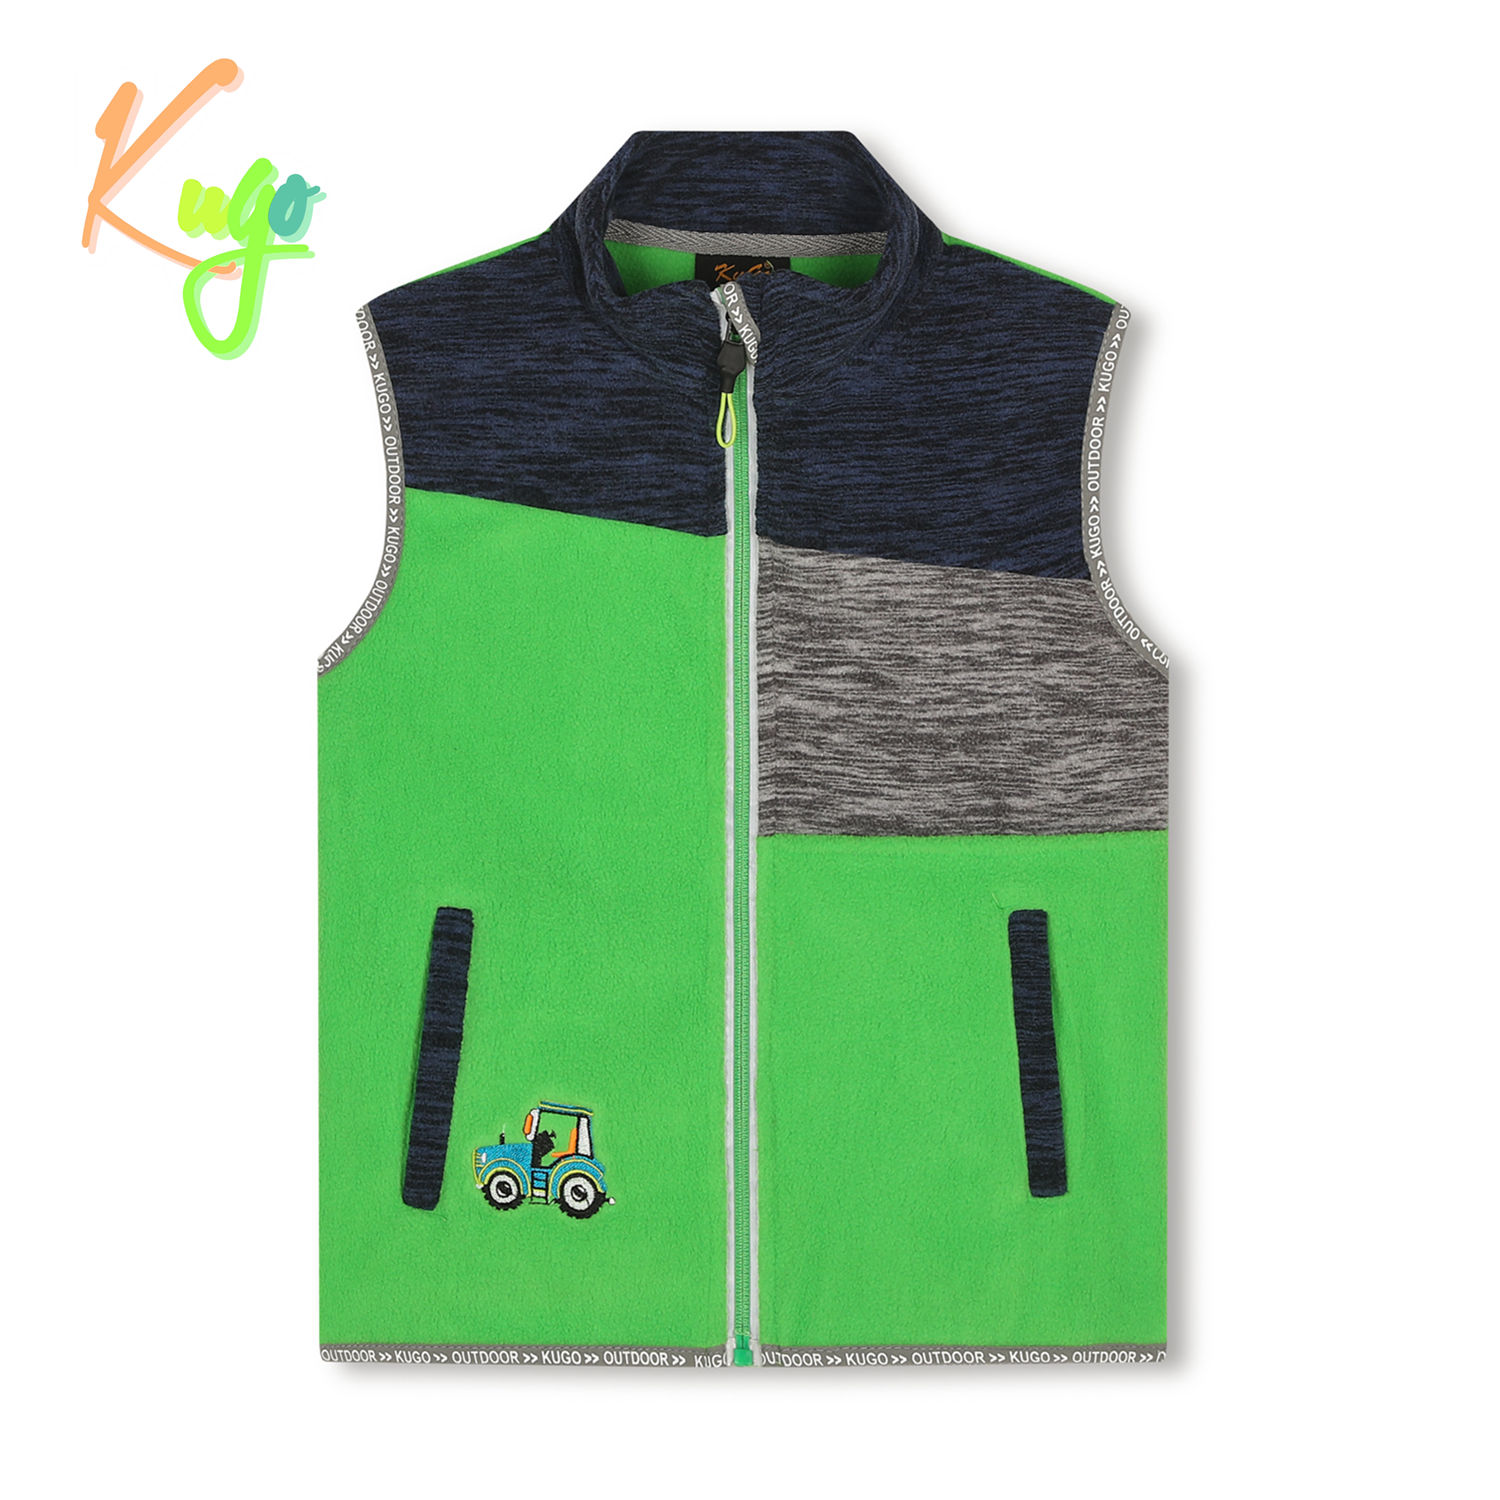 Chlapecká flísová vesta- KUGO FM8789, zelená Barva: Zelená, Velikost: 98